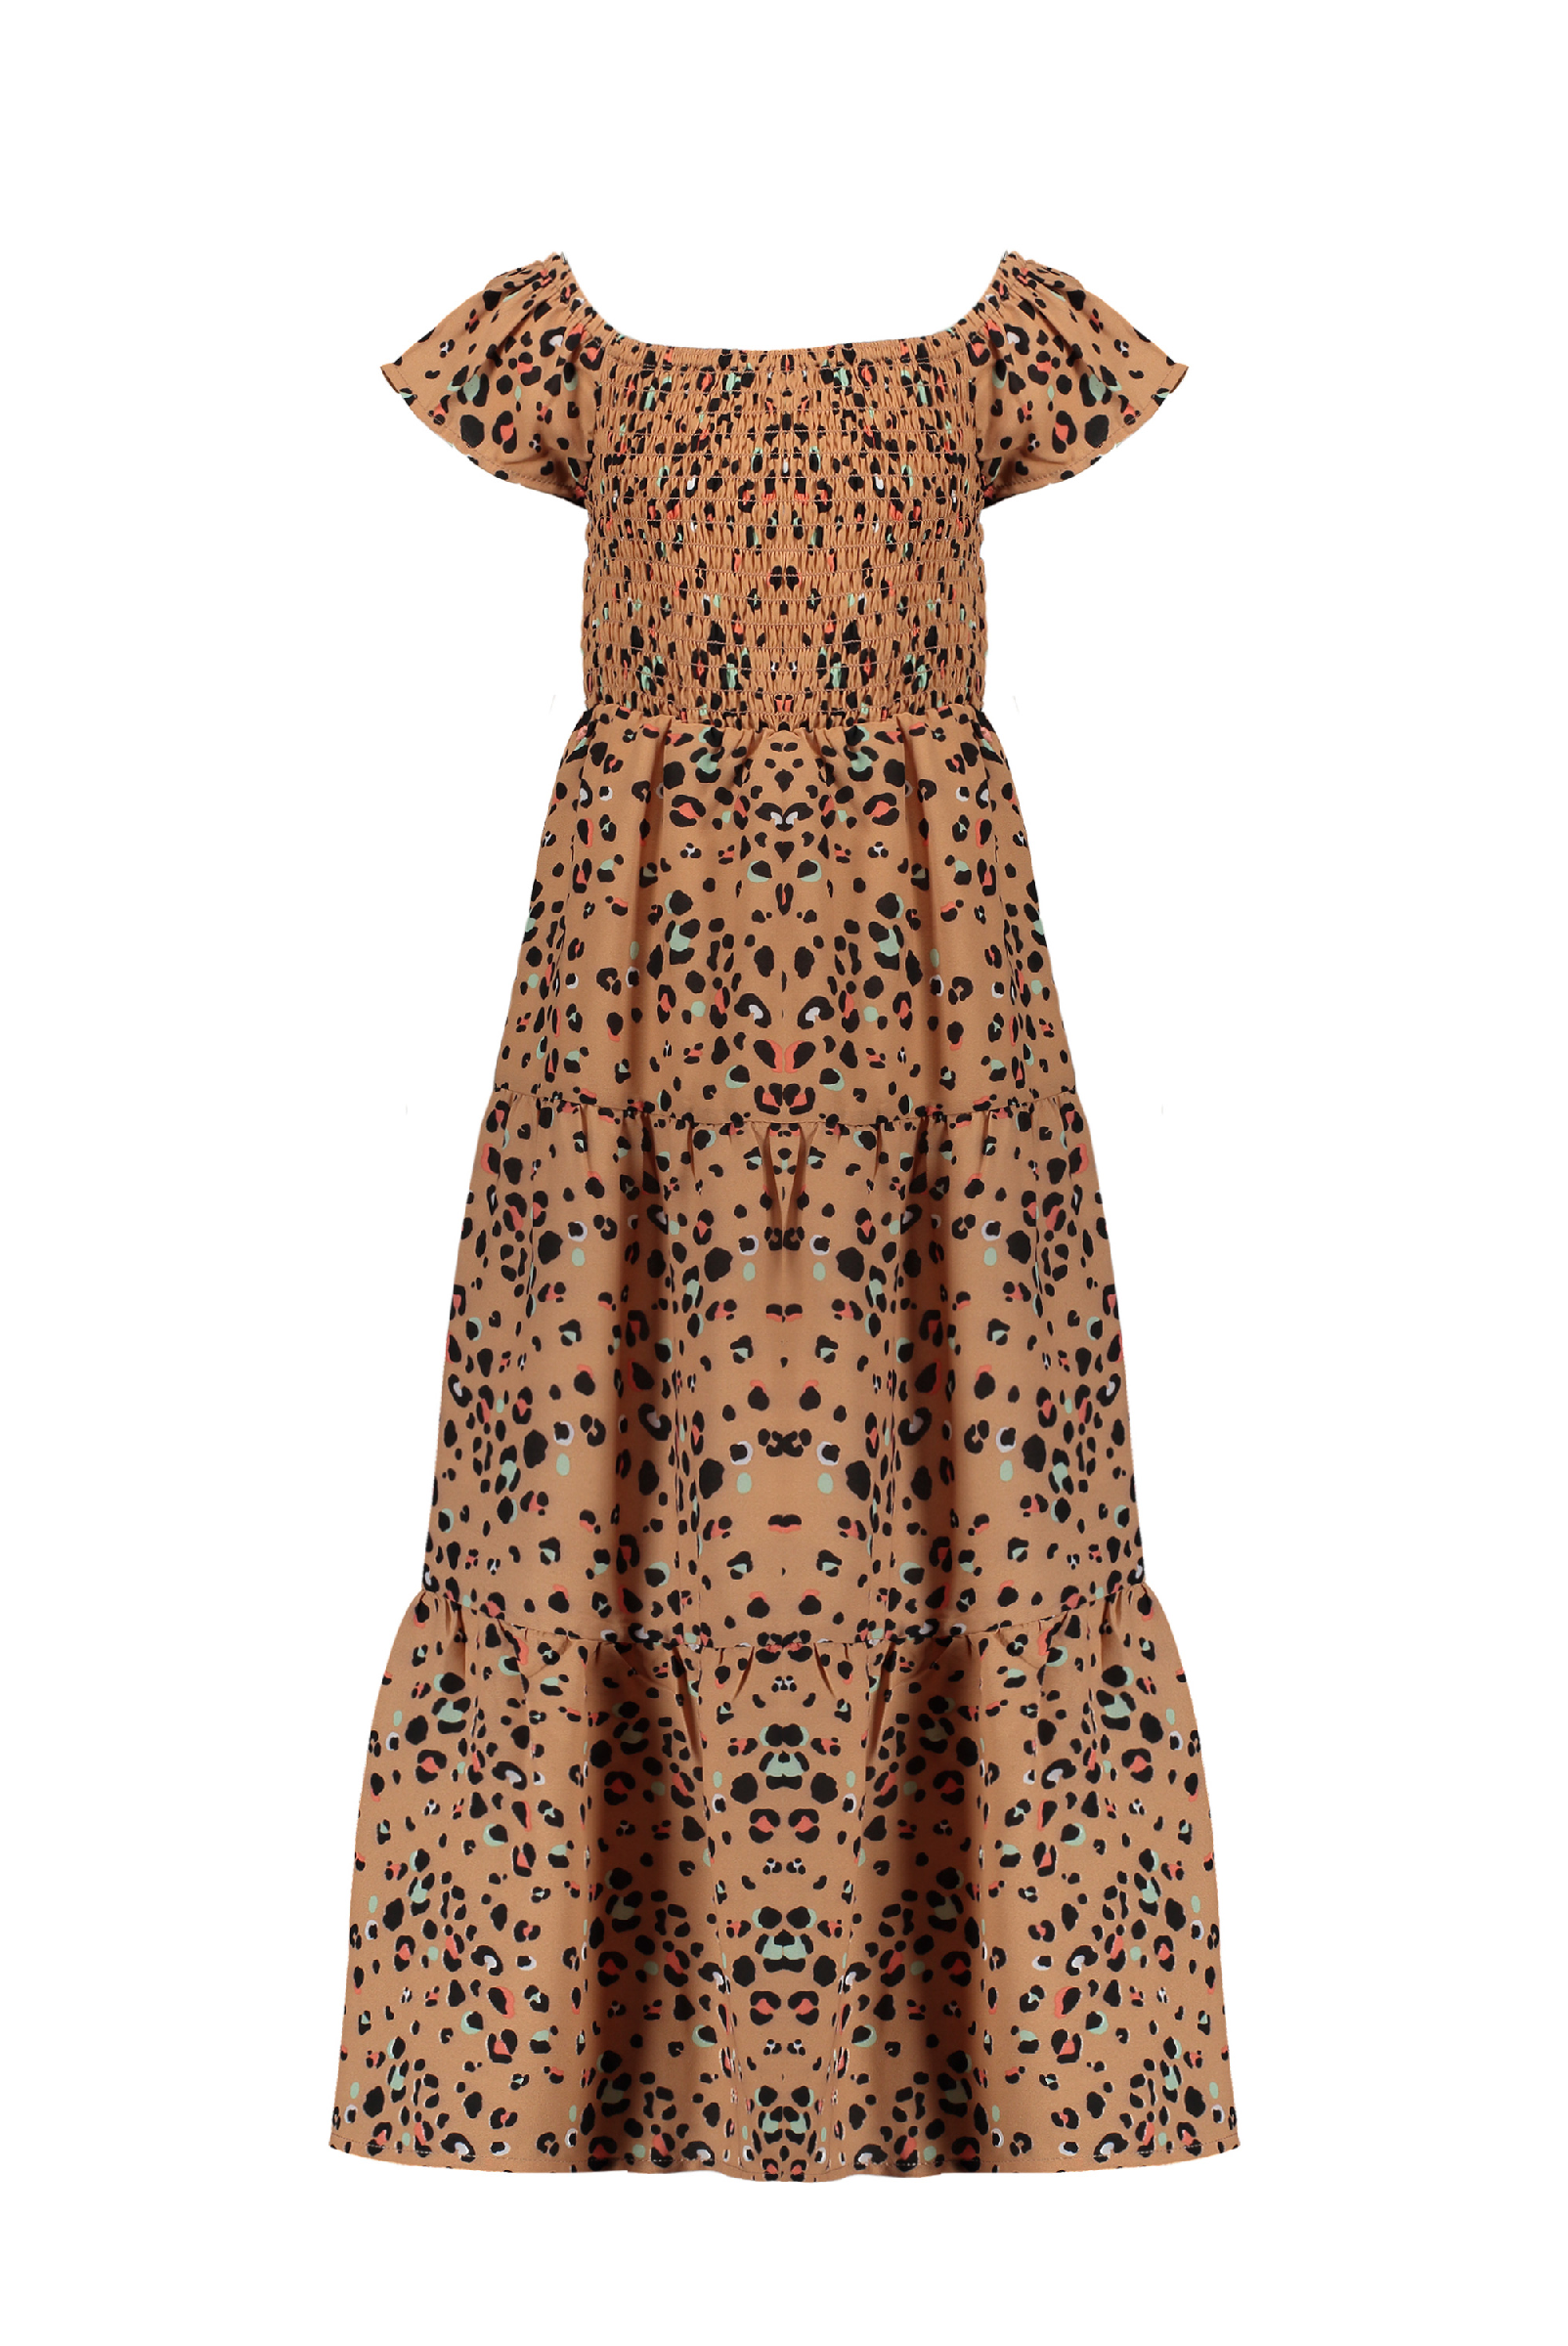 Meisjes Malia AOP multi animal smock long, cold shldr dress van NoNo in de kleur Hazelnut in maat 146, 152.